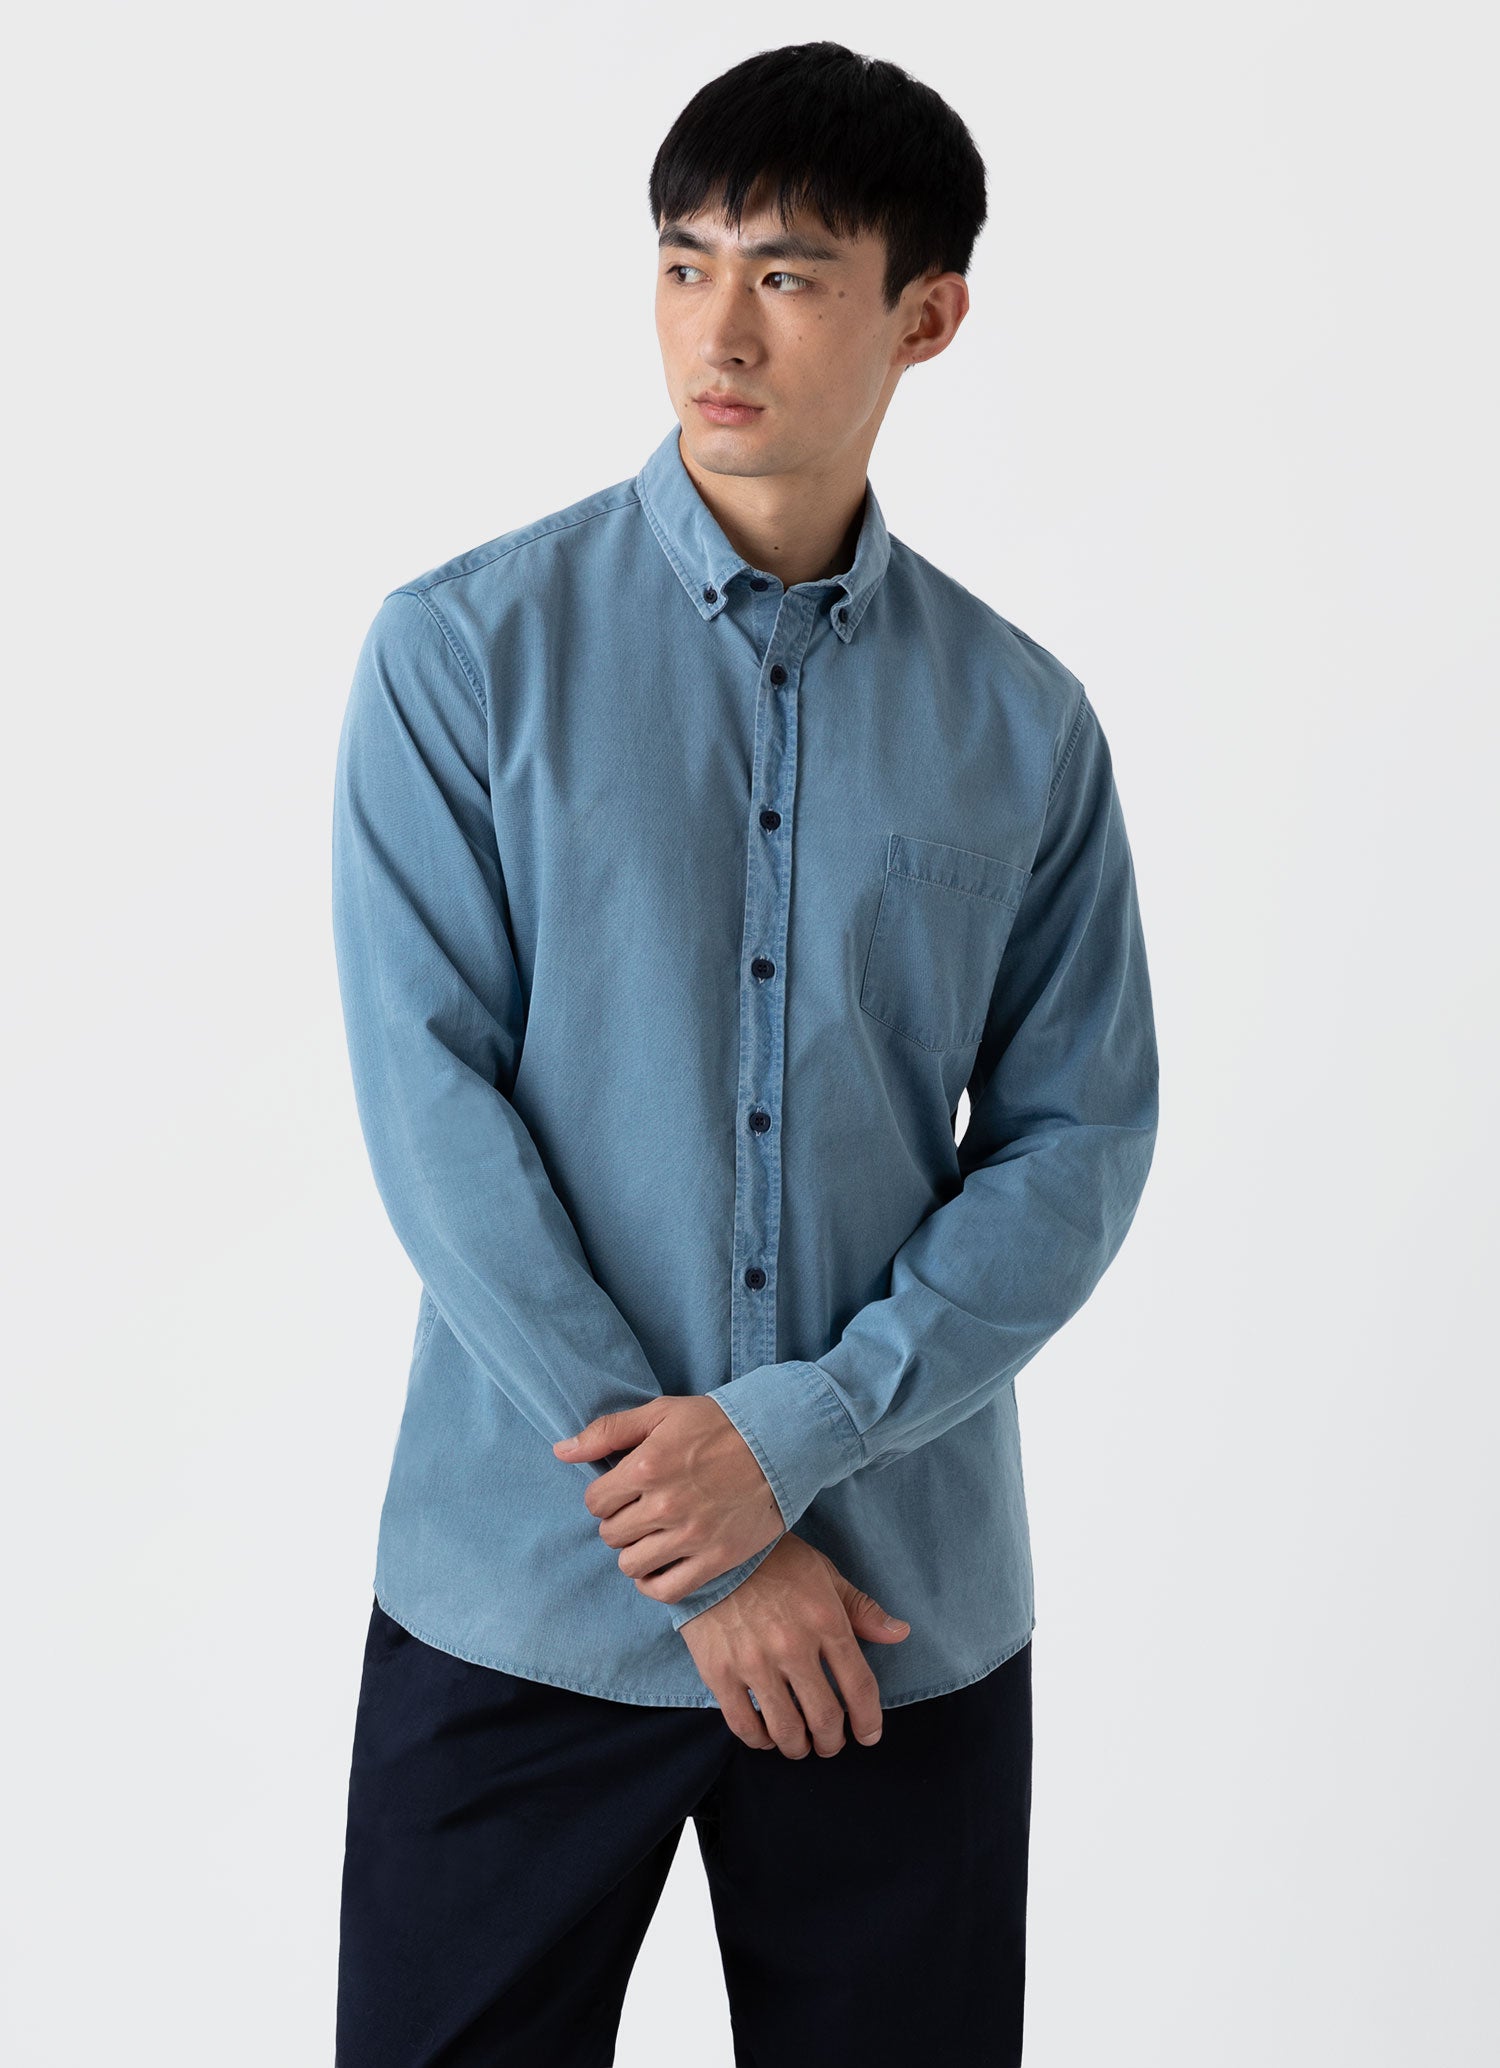 Men's Button Down Denim Shirt in Light Indigo